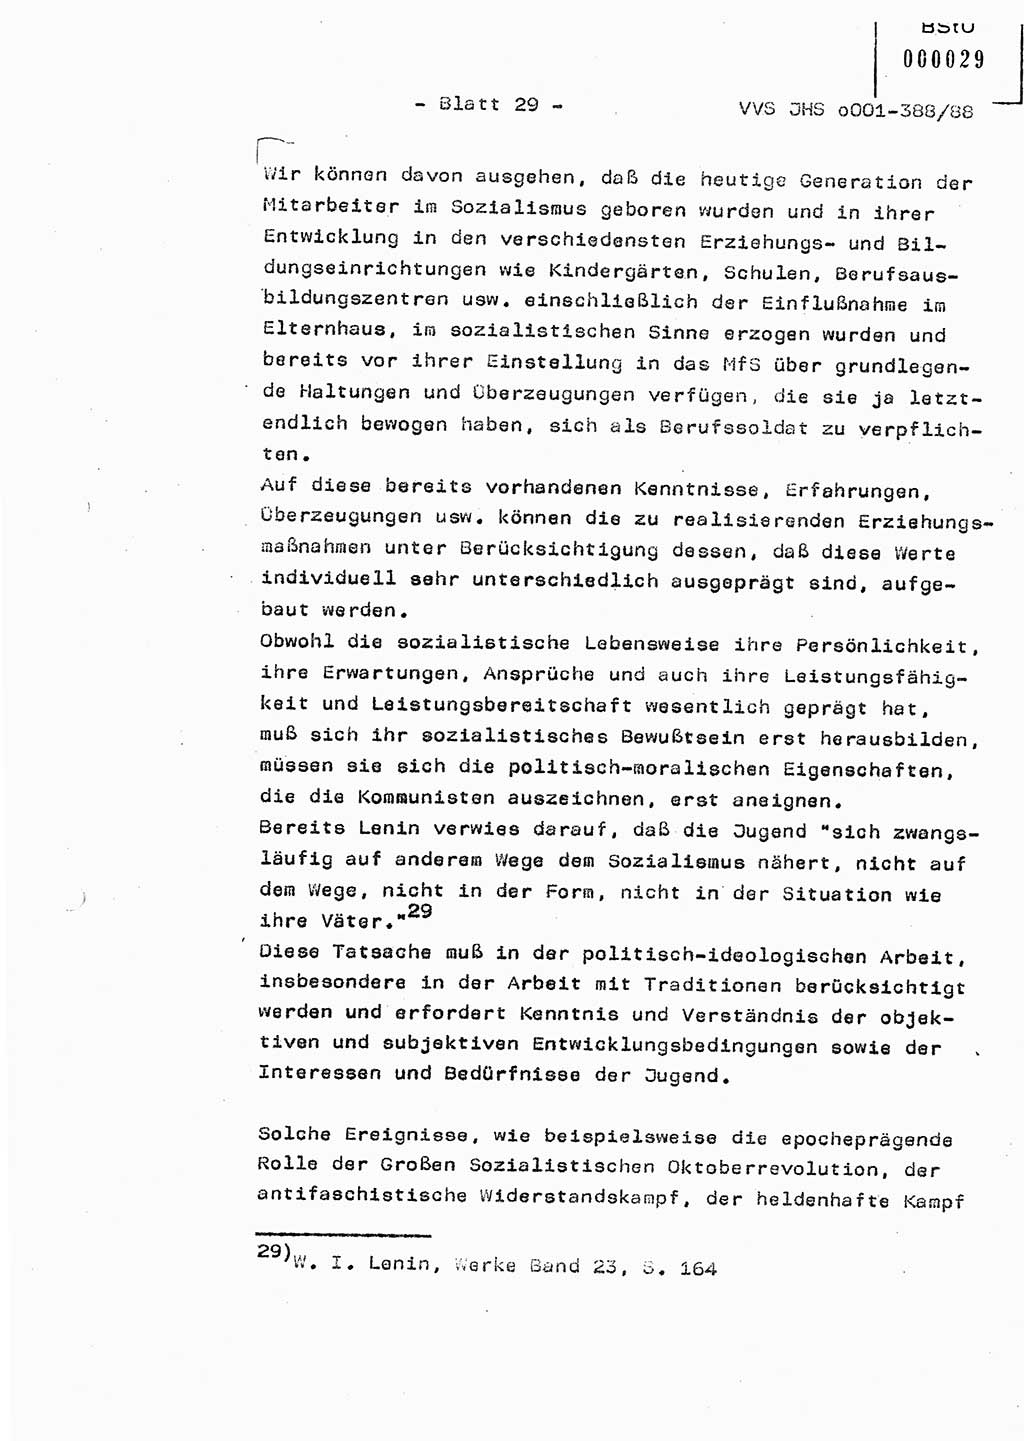 Diplomarbeit Hauptmann Heinz Brixel (Abt. ⅩⅣ), Ministerium für Staatssicherheit (MfS) [Deutsche Demokratische Republik (DDR)], Juristische Hochschule (JHS), Vertrauliche Verschlußsache (VVS) o001-388/88, Potsdam 1988, Blatt 29 (Dipl.-Arb. MfS DDR JHS VVS o001-388/88 1988, Bl. 29)